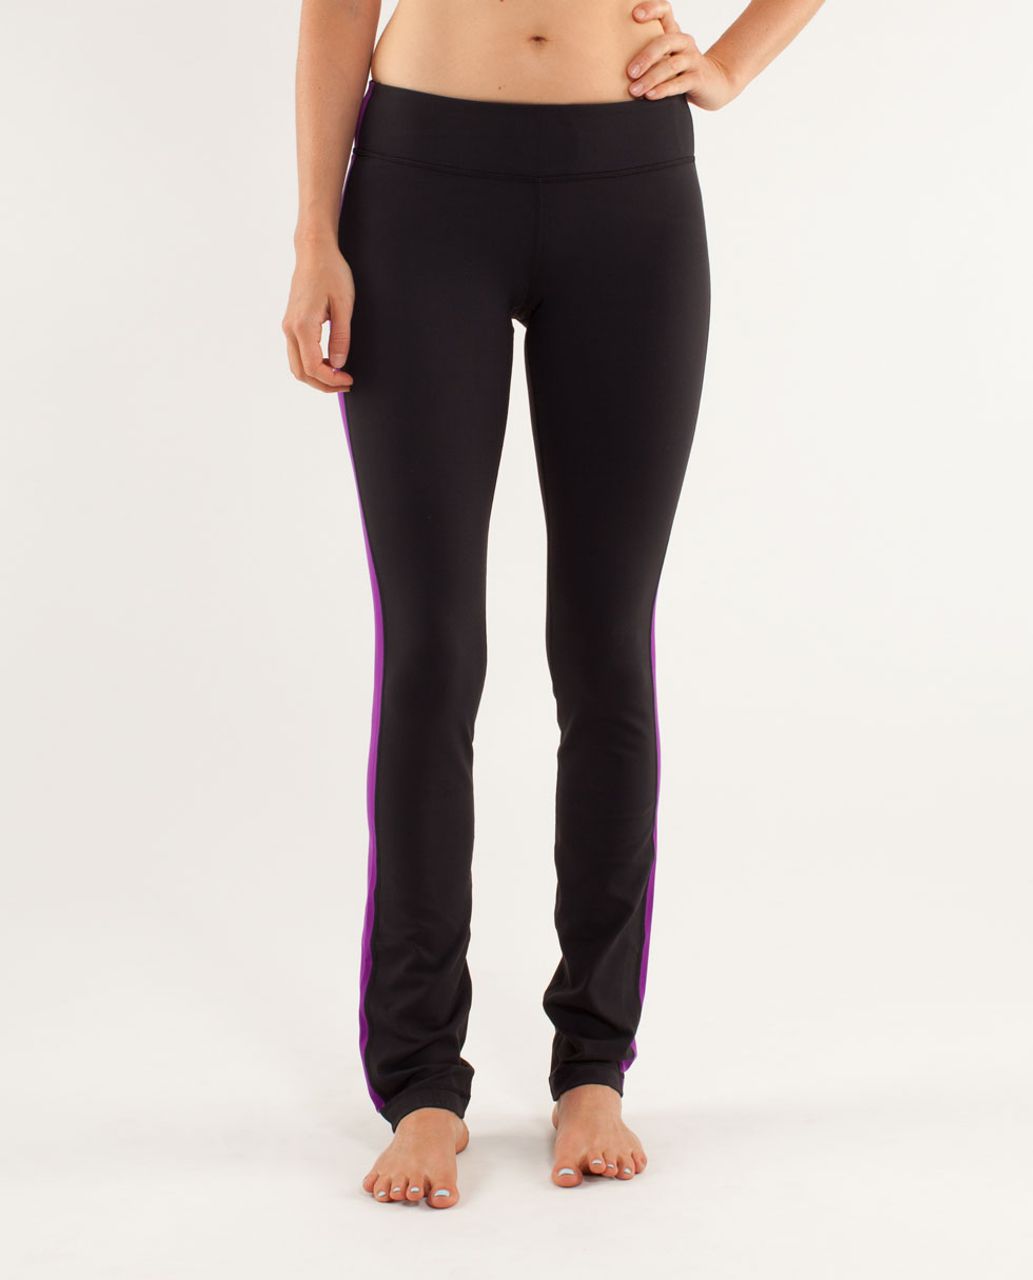 Lululemon Side Angle Pant - Black / Tender Violet